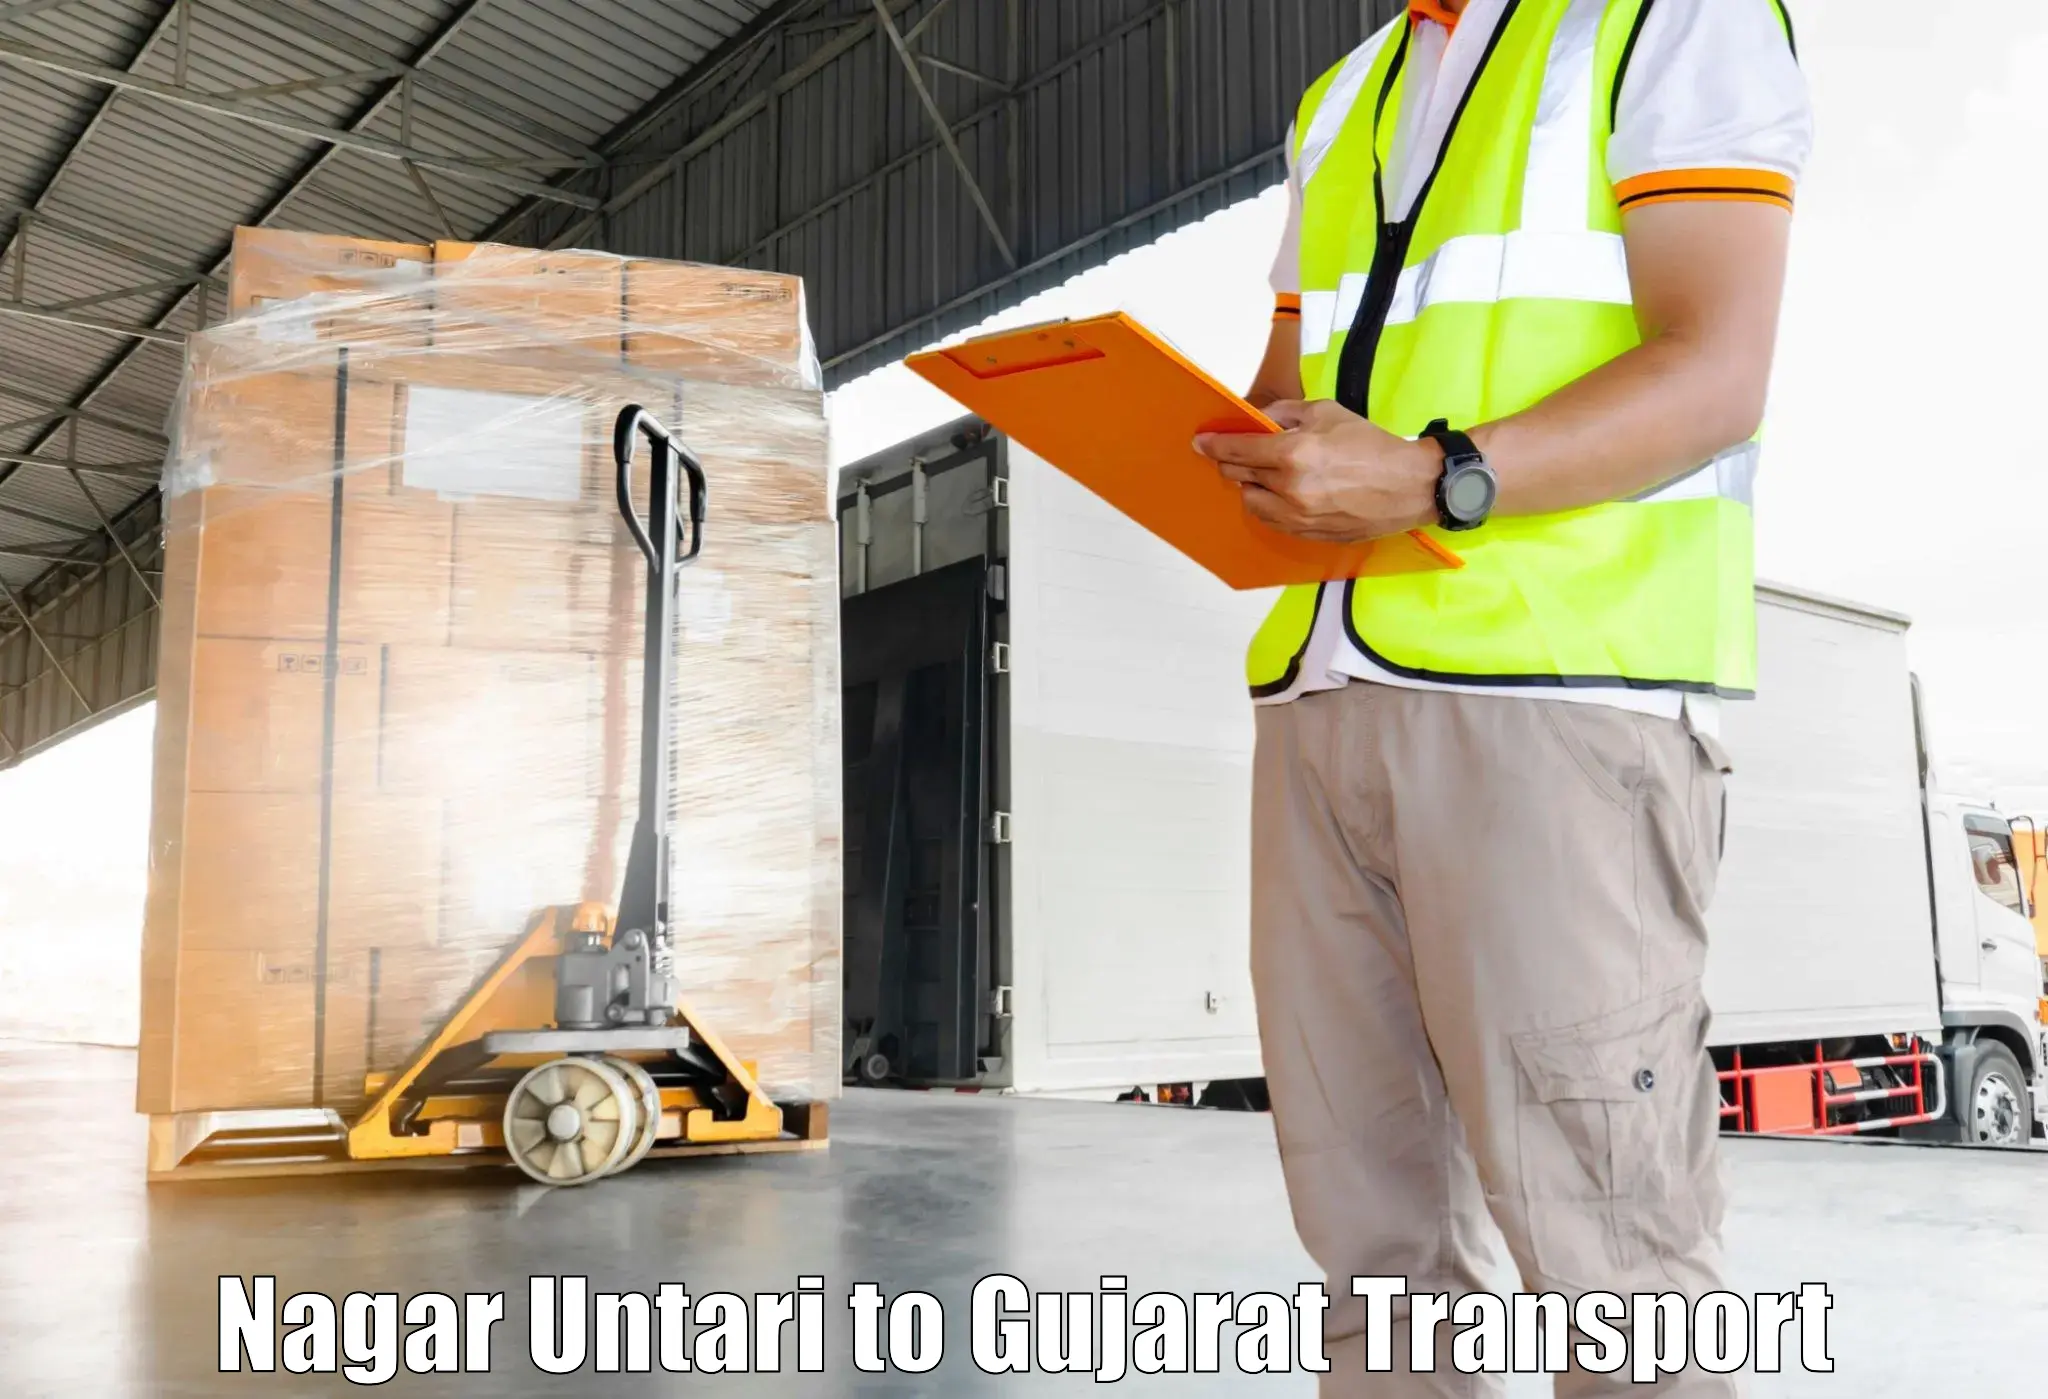 Shipping services Nagar Untari to Modasa